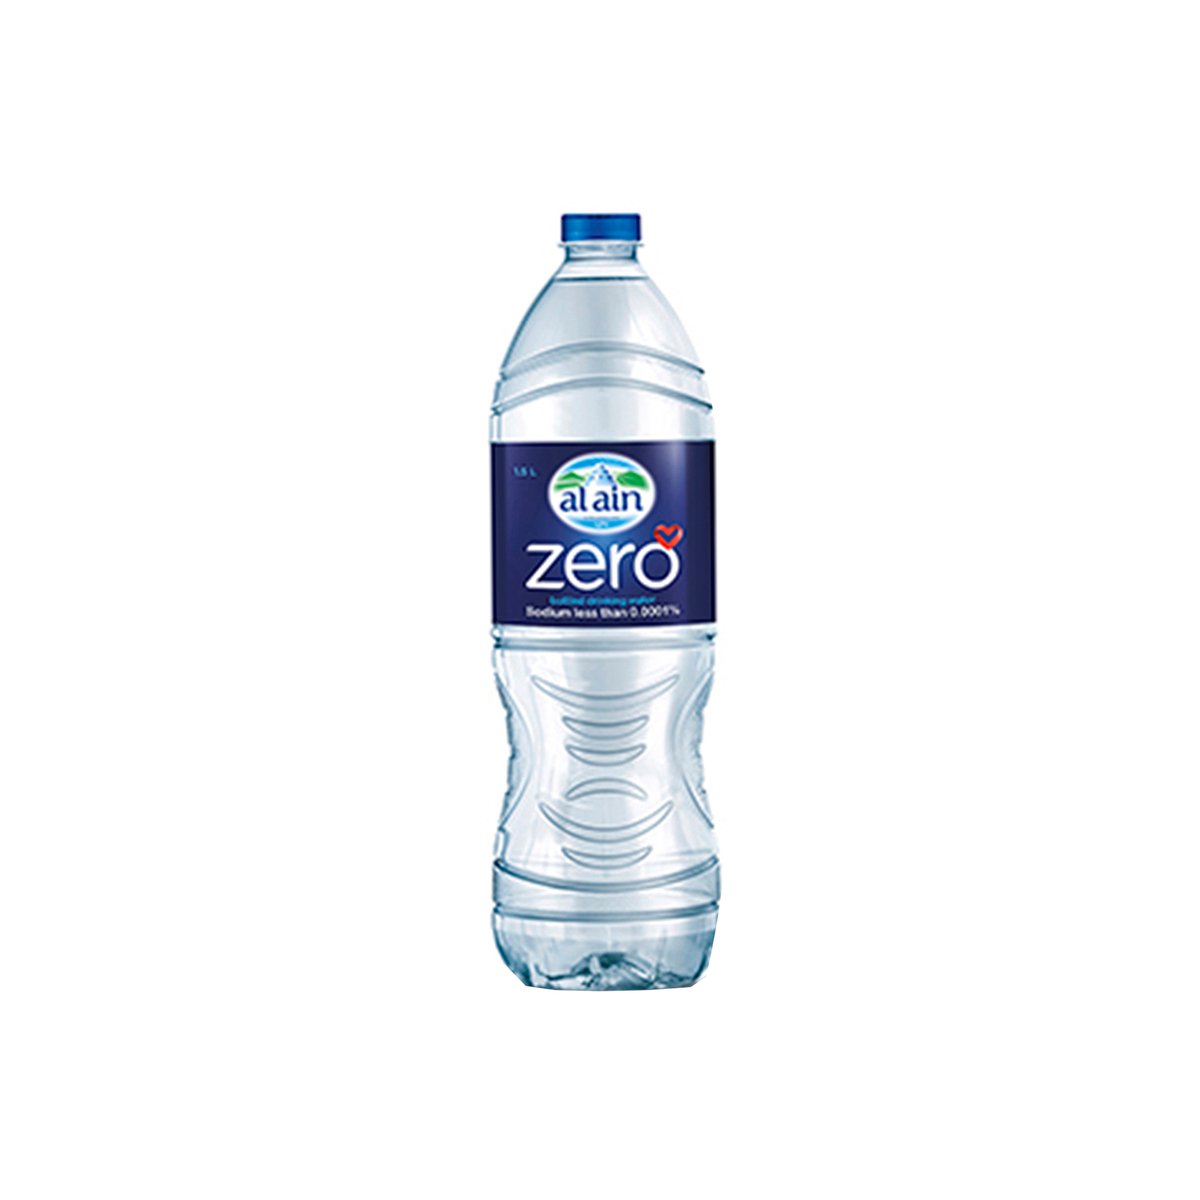 العين زيرو مياه شرب معبأة خالية من الصوديوم 6 × 1.5 لتر